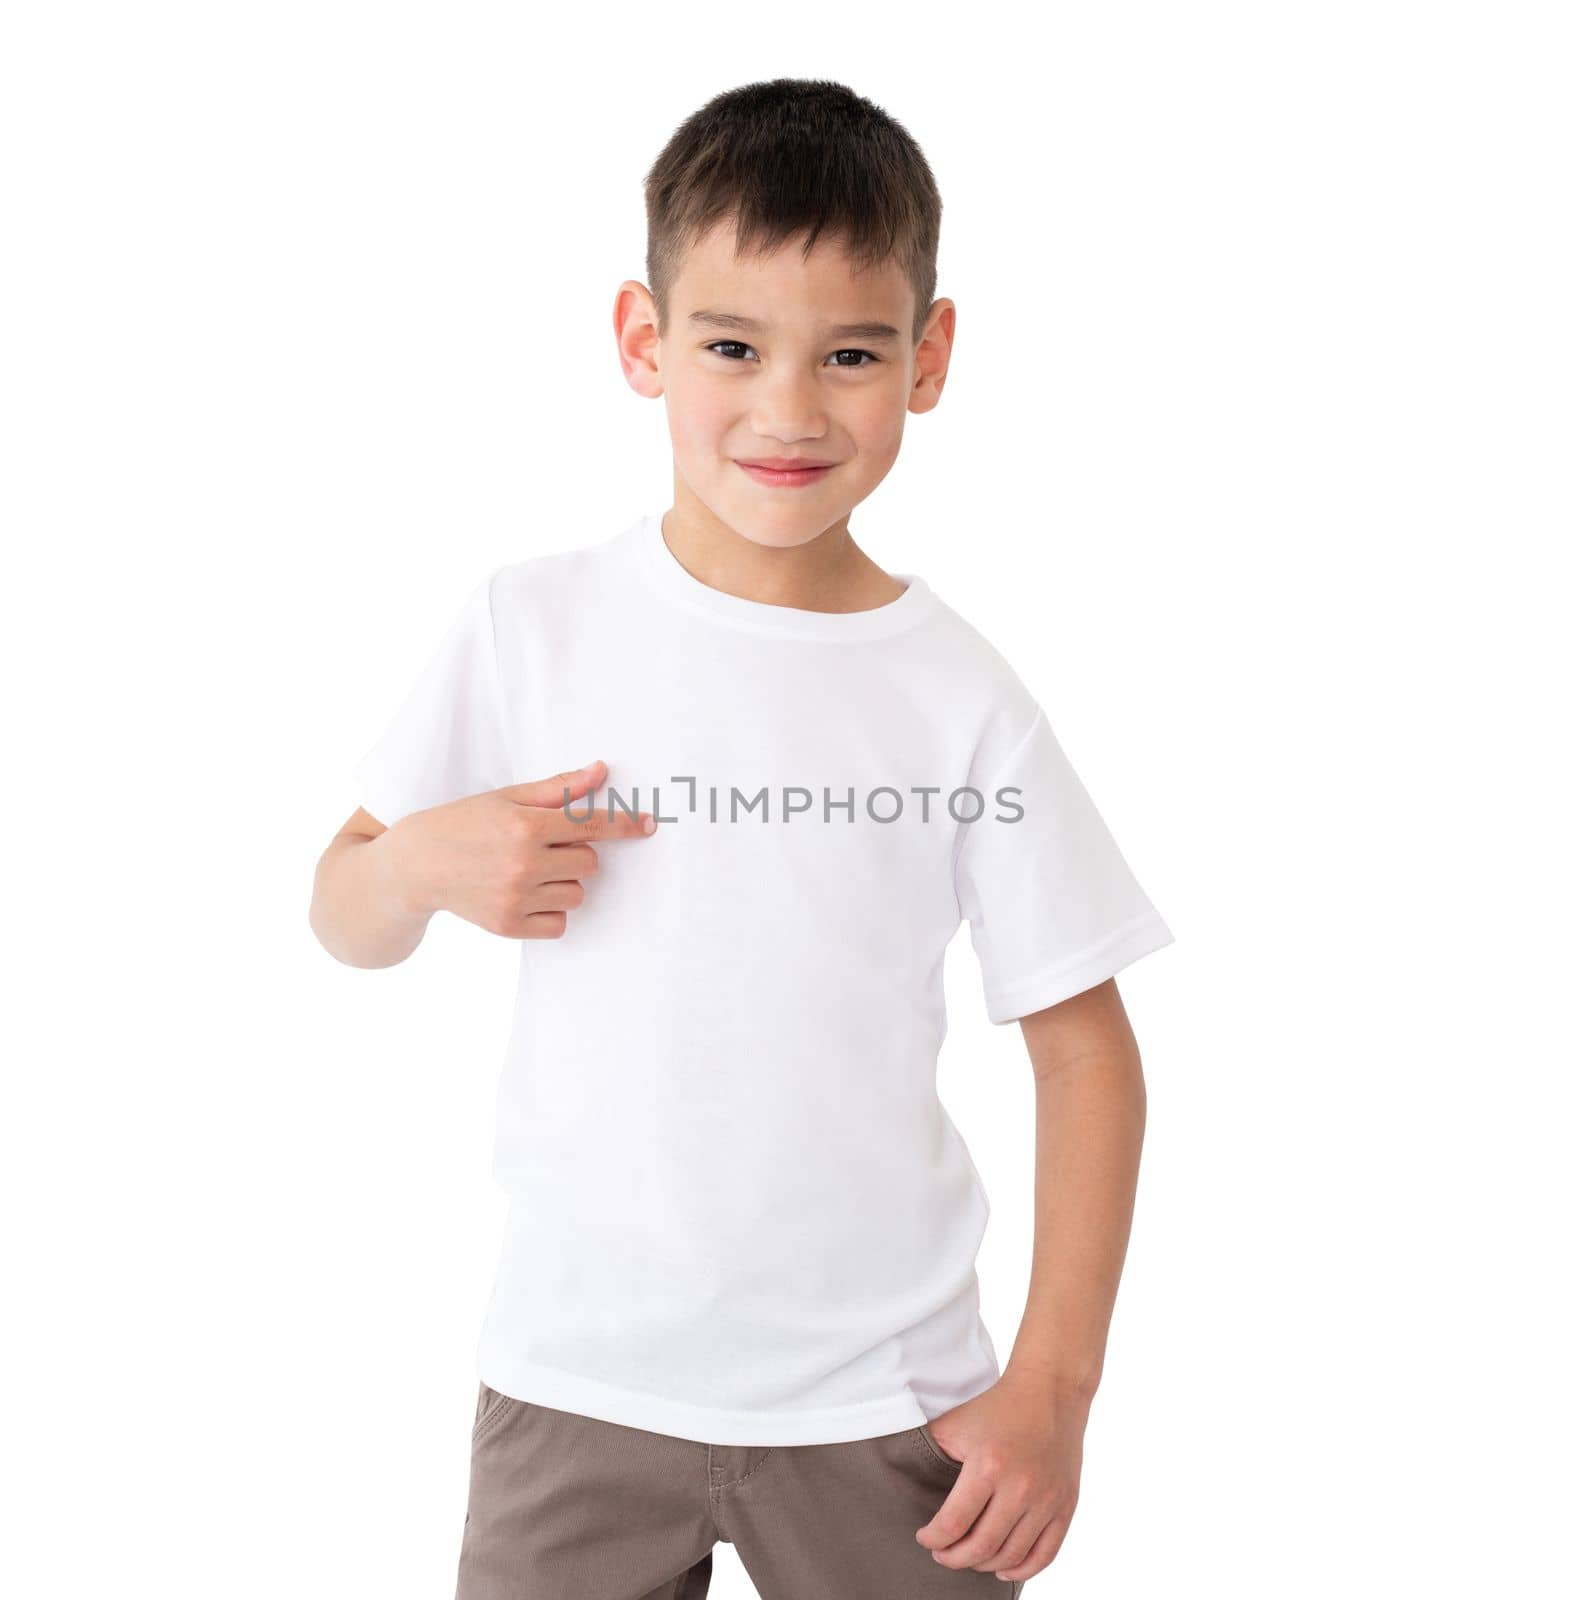 Cute little boy wearing blank t-shirt by GekaSkr